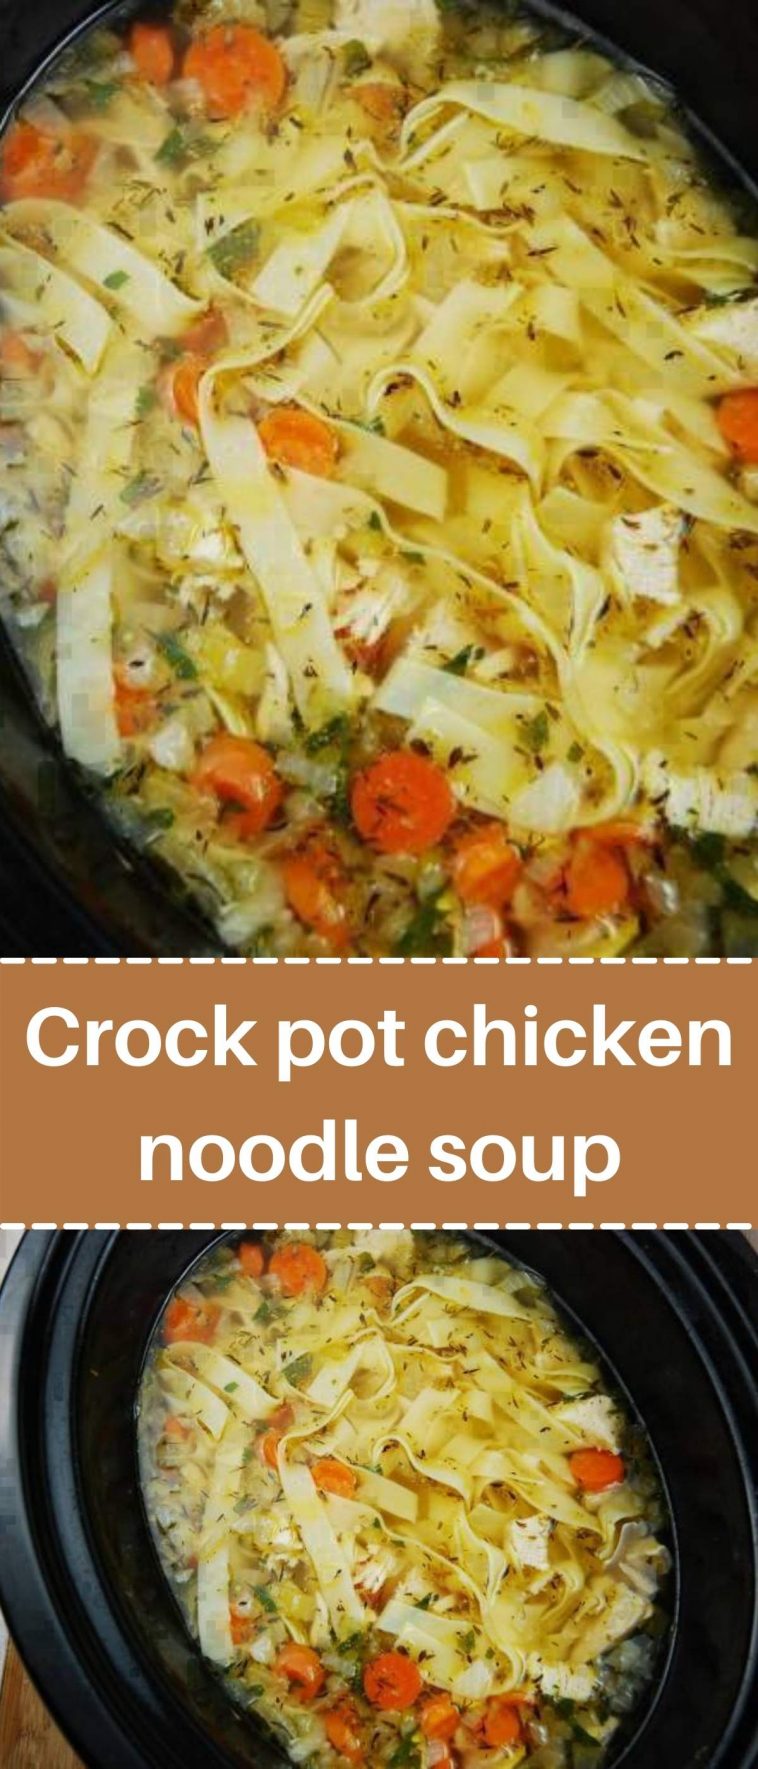 Crock pot chicken noodle soup